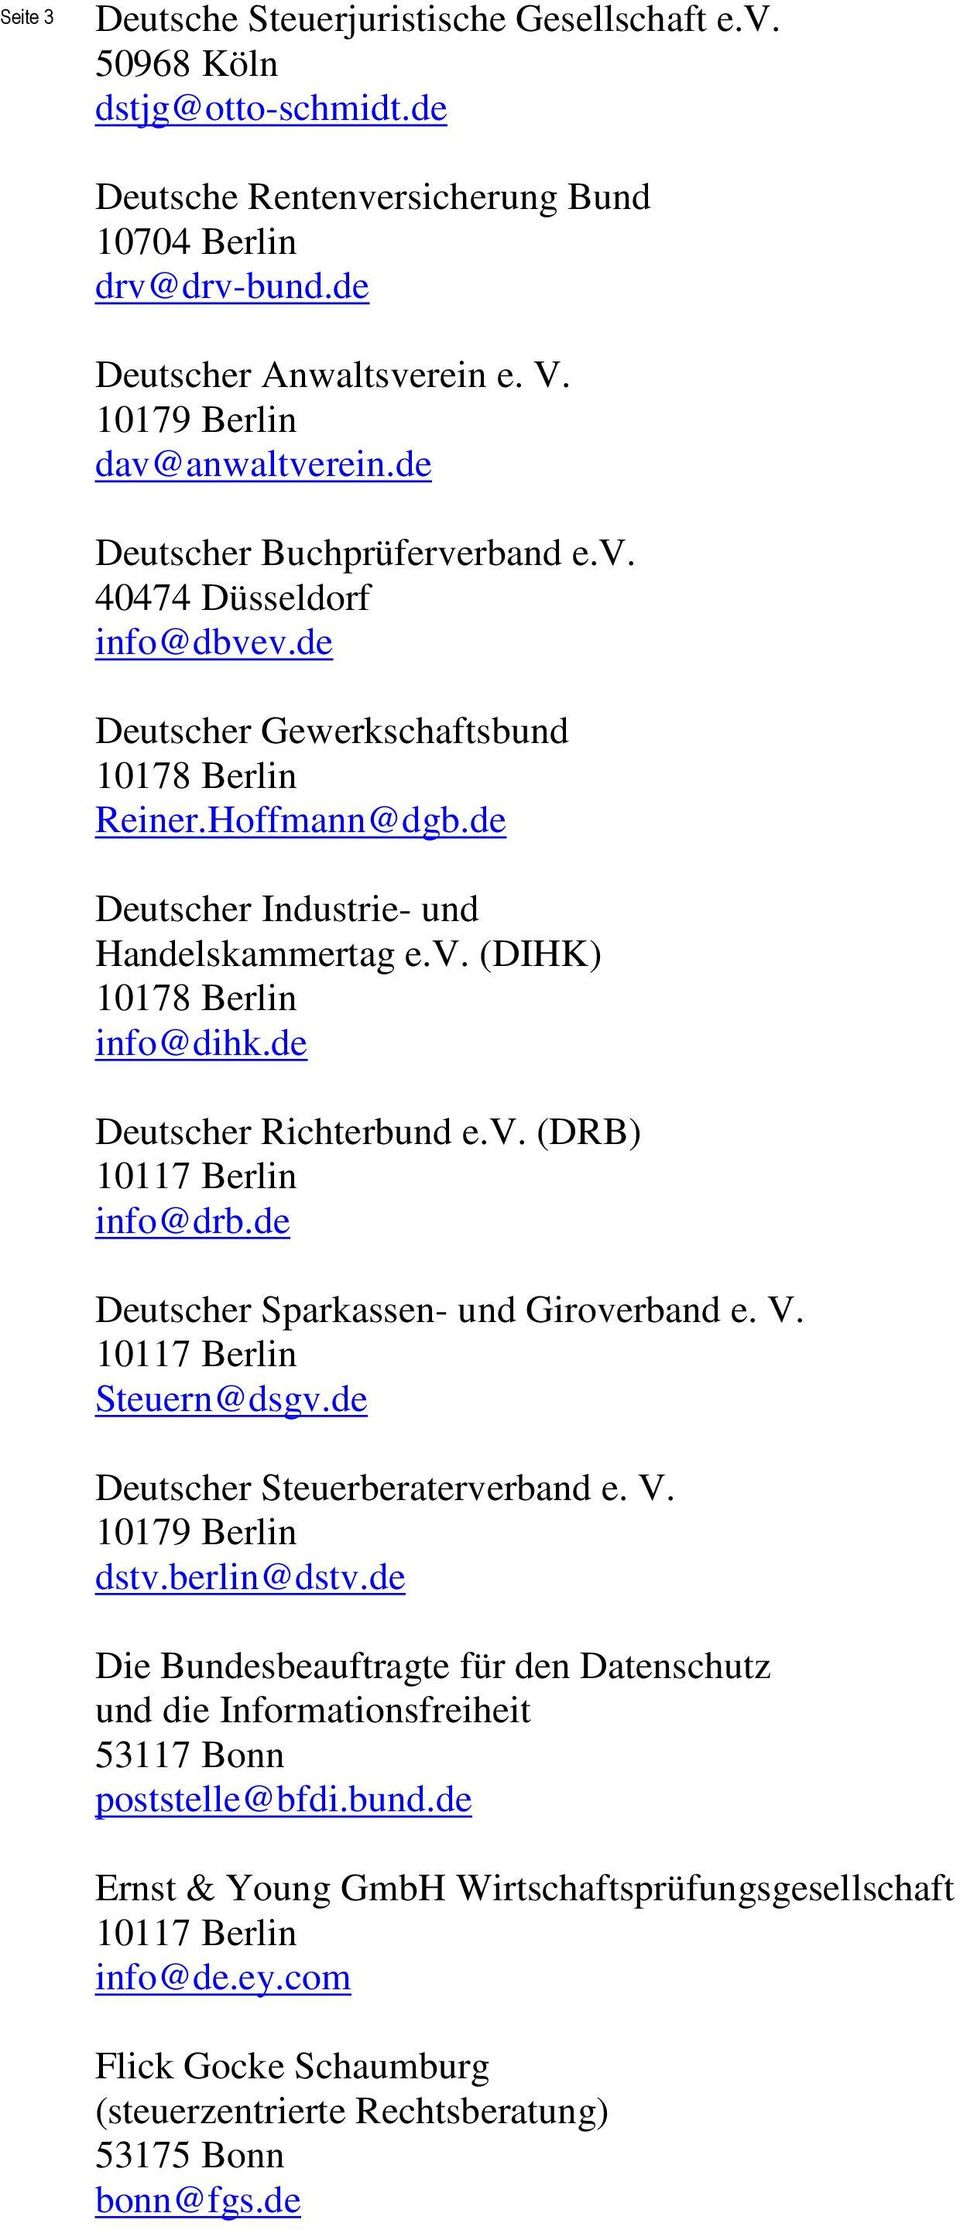 de Deutscher Richterbund e.v. (DRB) info@drb.de Deutscher Sparkassen- und Giroverband e. V. Steuern@dsgv.de Deutscher Steuerberaterverband e. V. dstv.berlin@dstv.